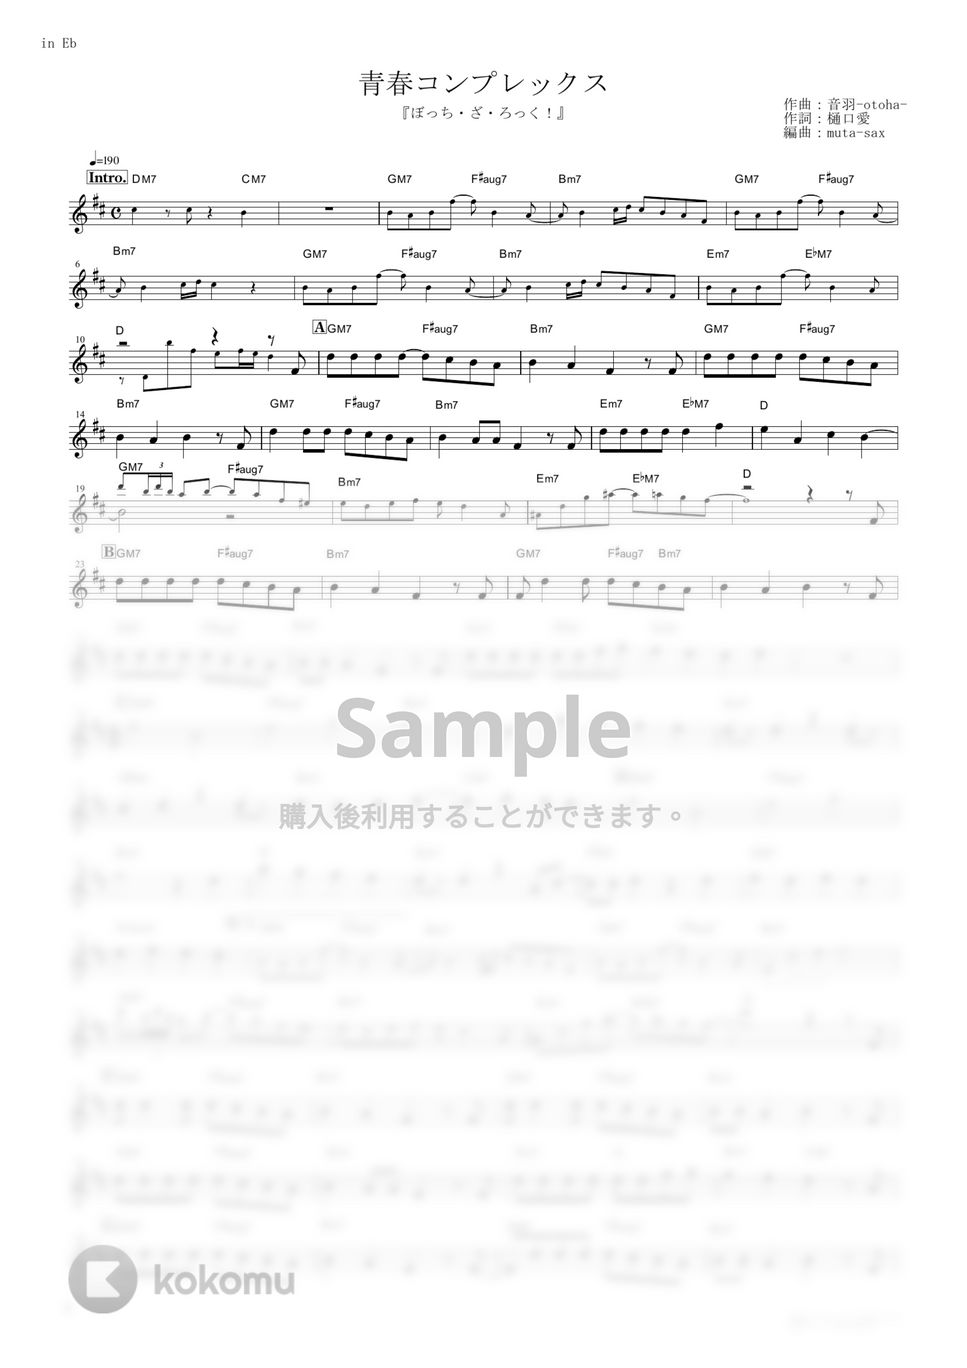 結束バンド - 青春コンプレックス (『ぼっち・ざ・ろっく！』 / in Eb) by muta-sax